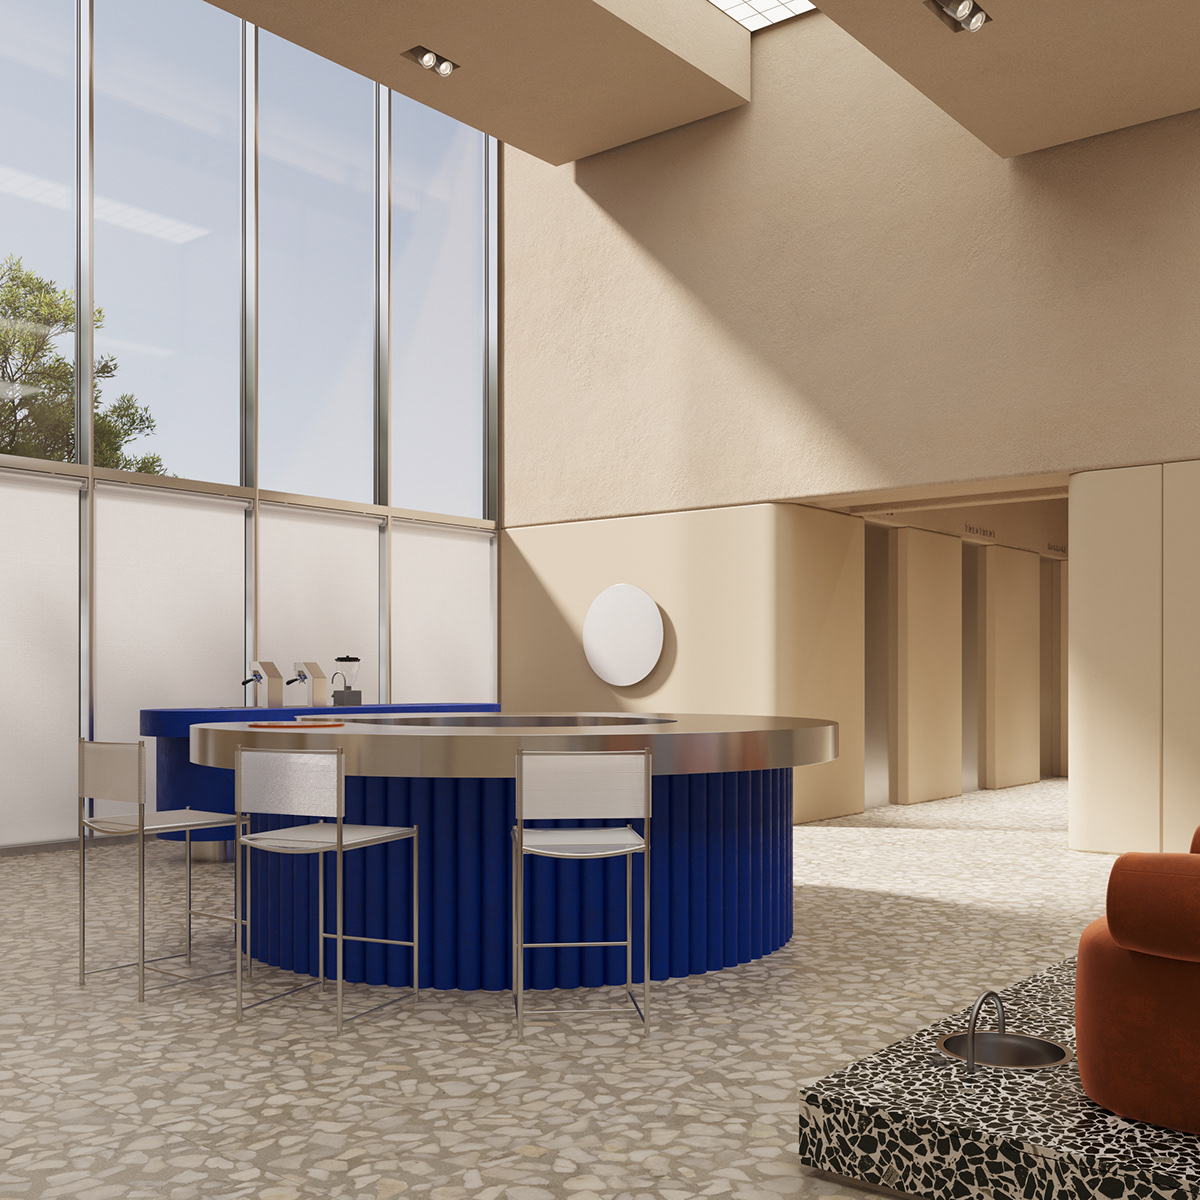 3ds max architecture beauty corona design Interior mall Minimalism salon Spa